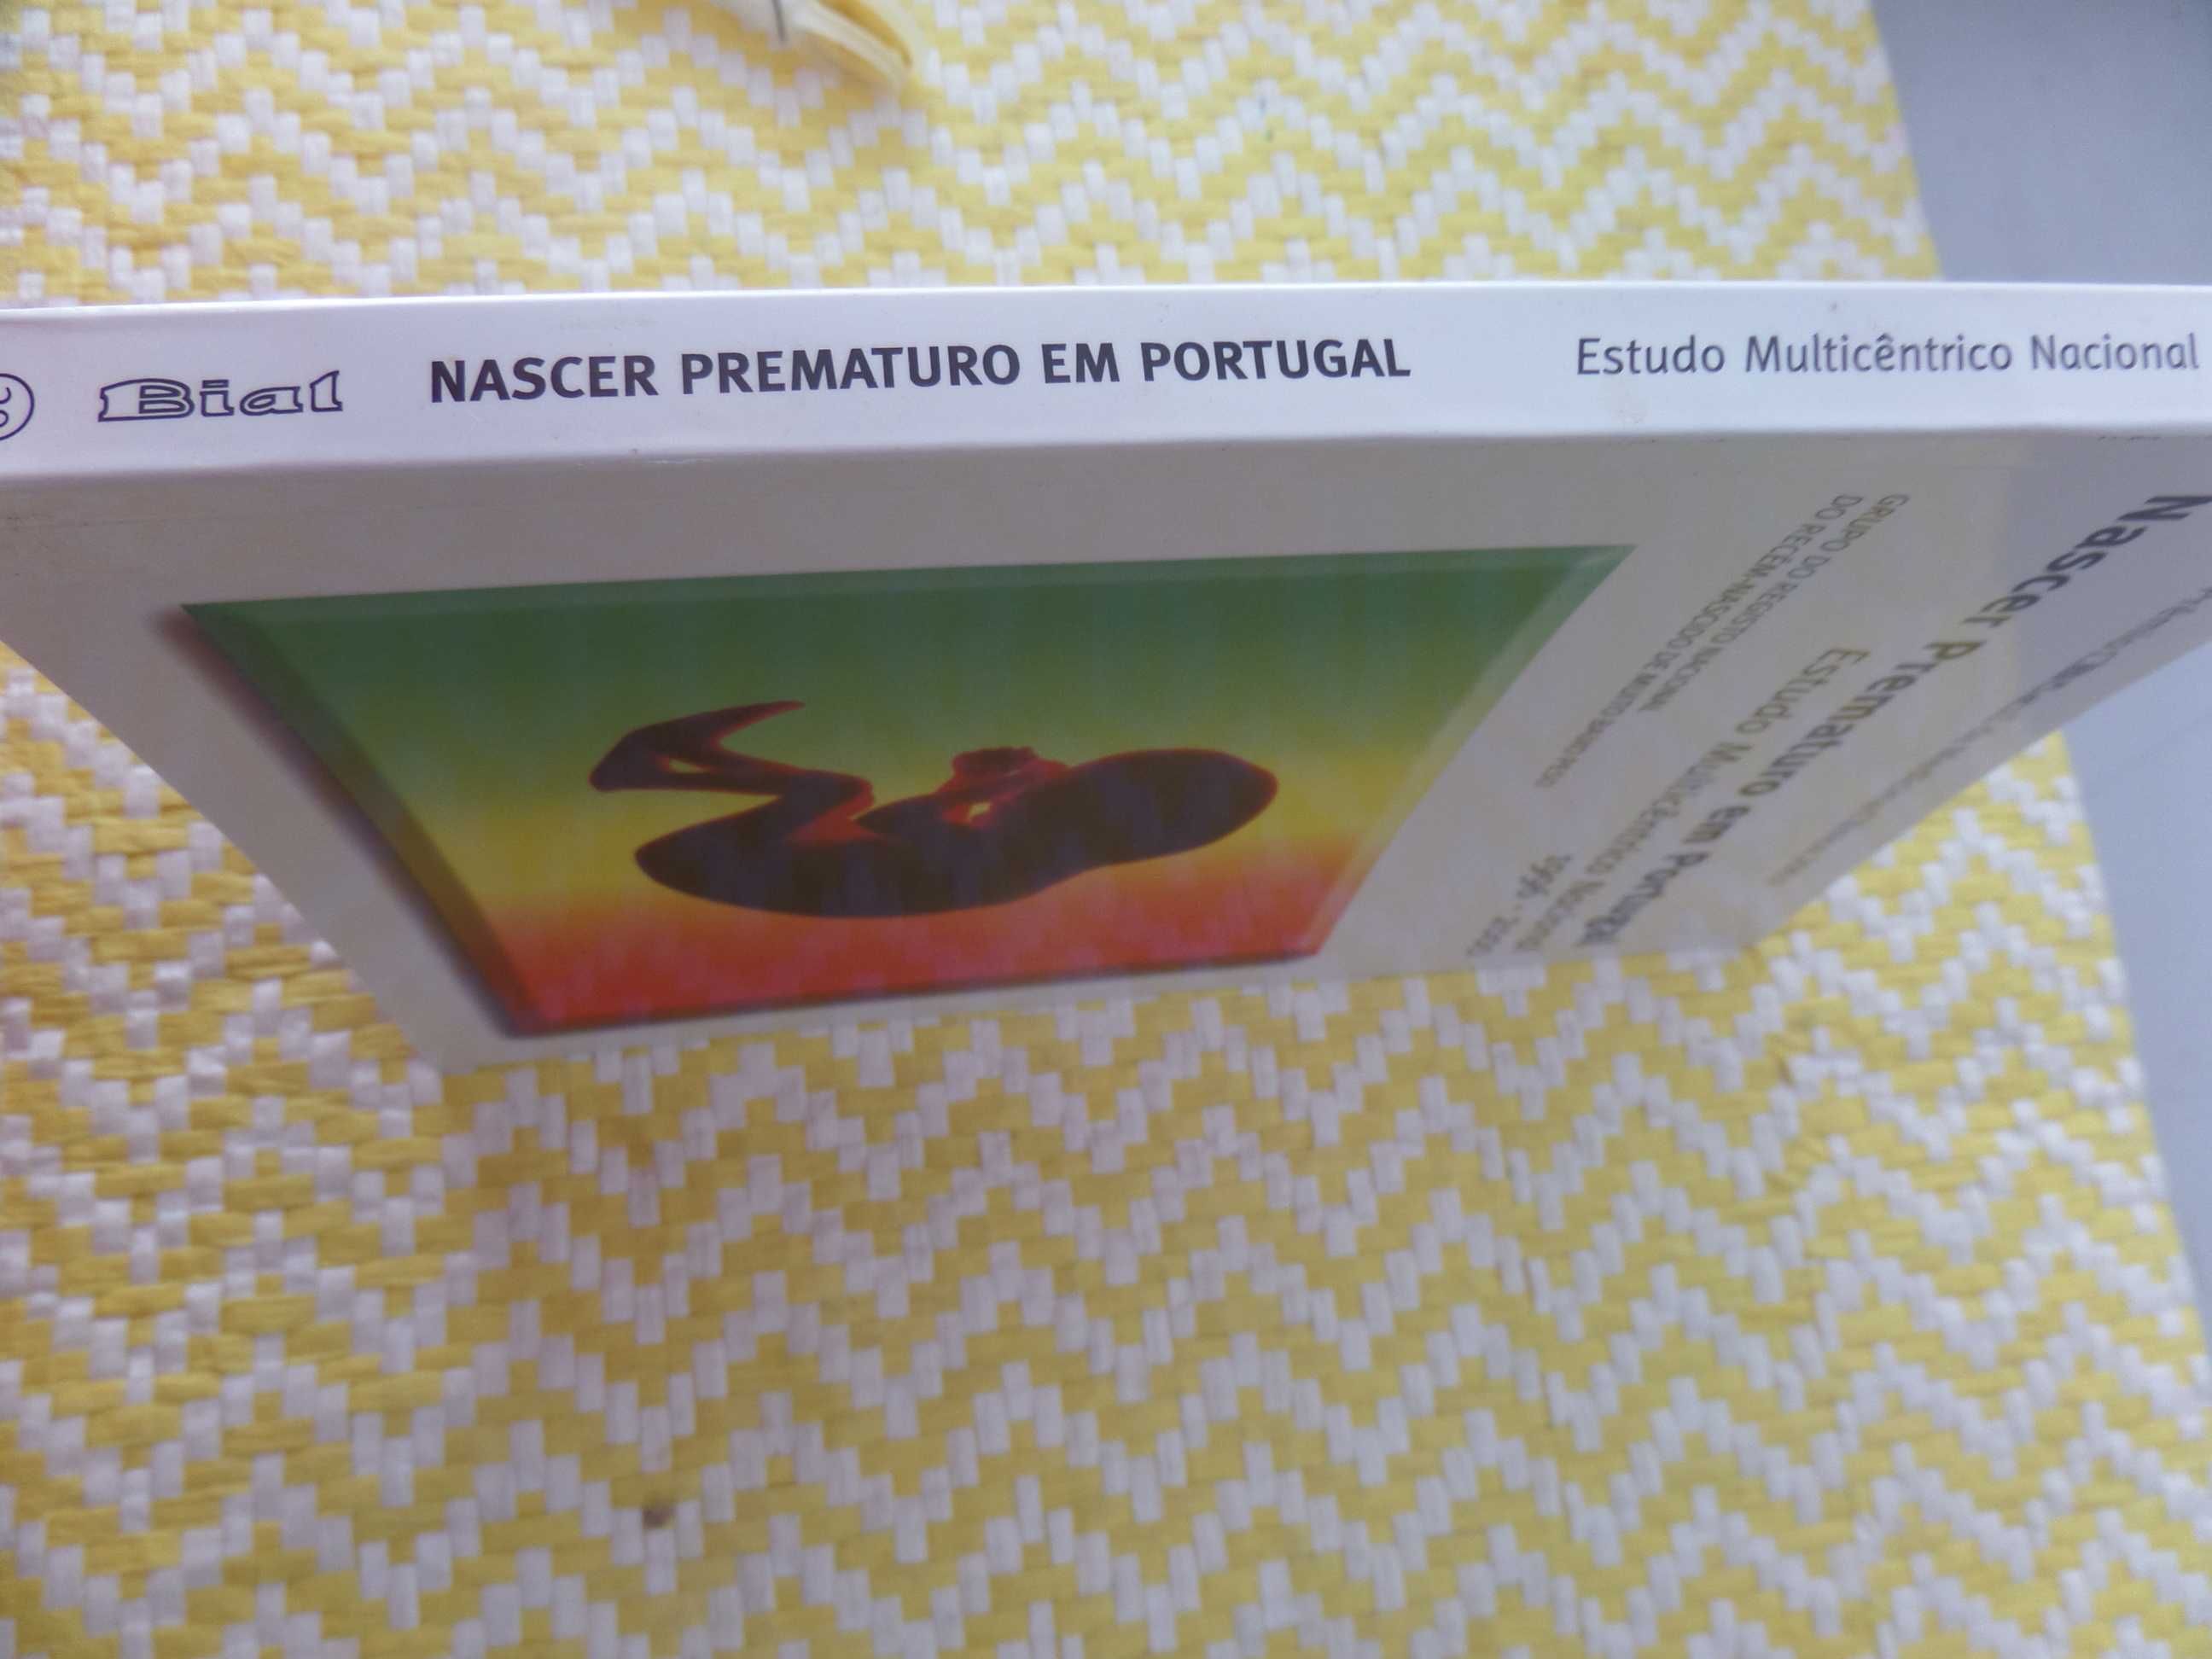 Nascer prematuro em Portugal – Estudo multicêntrico nacional